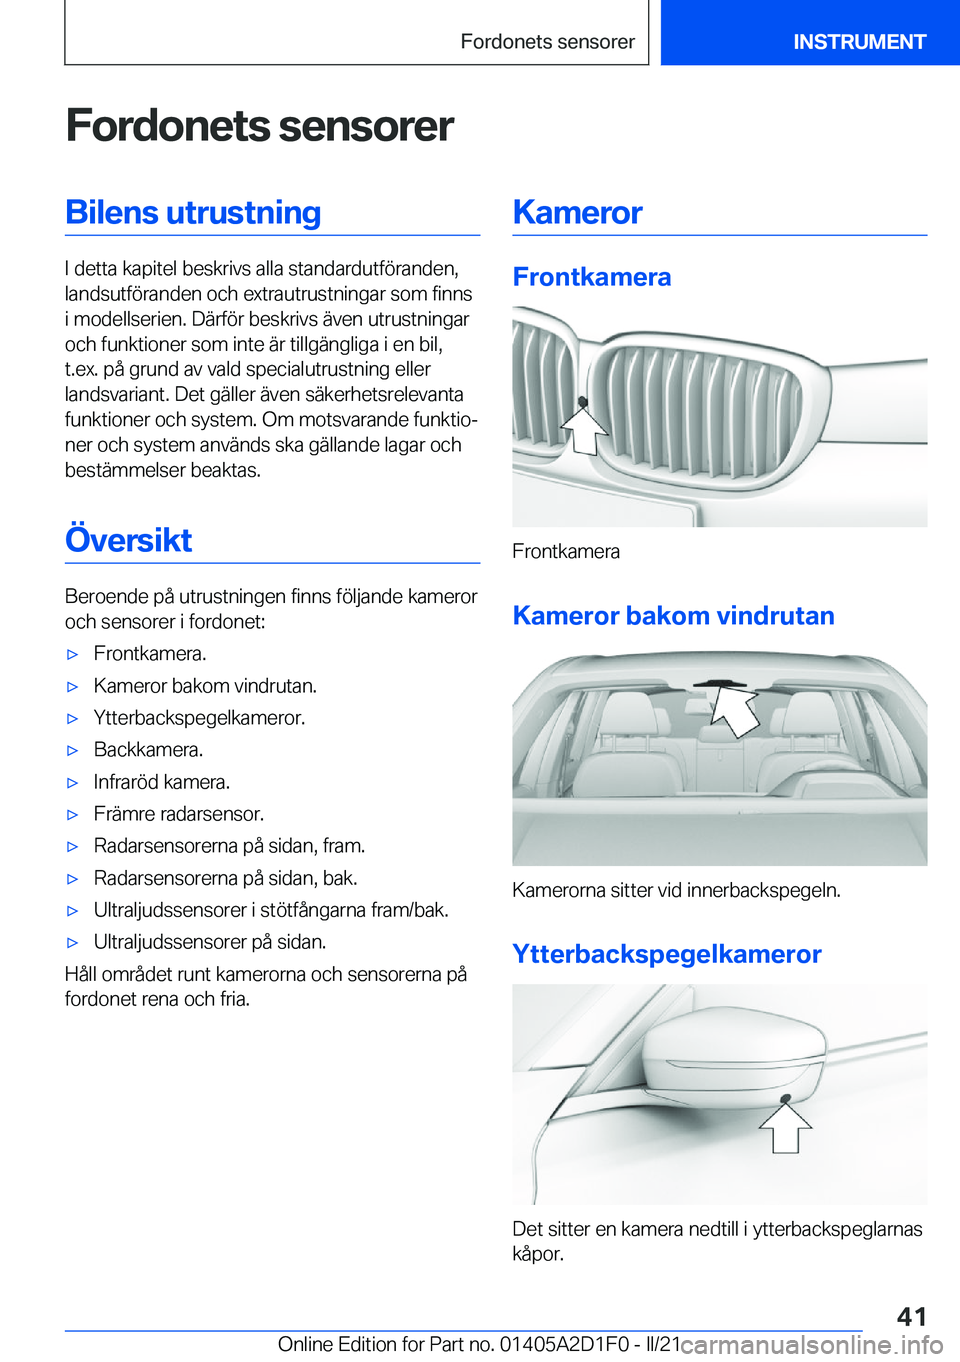 BMW X6 M 2021  InstruktionsbÖcker (in Swedish) �F�o�r�d�o�n�e�t�s��s�e�n�s�o�r�e�r�B�i�l�e�n�s��u�t�r�u�s�t�n�i�n�g
�I��d�e�t�t�a��k�a�p�i�t�e�l��b�e�s�k�r�i�v�s��a�l�l�a��s�t�a�n�d�a�r�d�u�t�f�